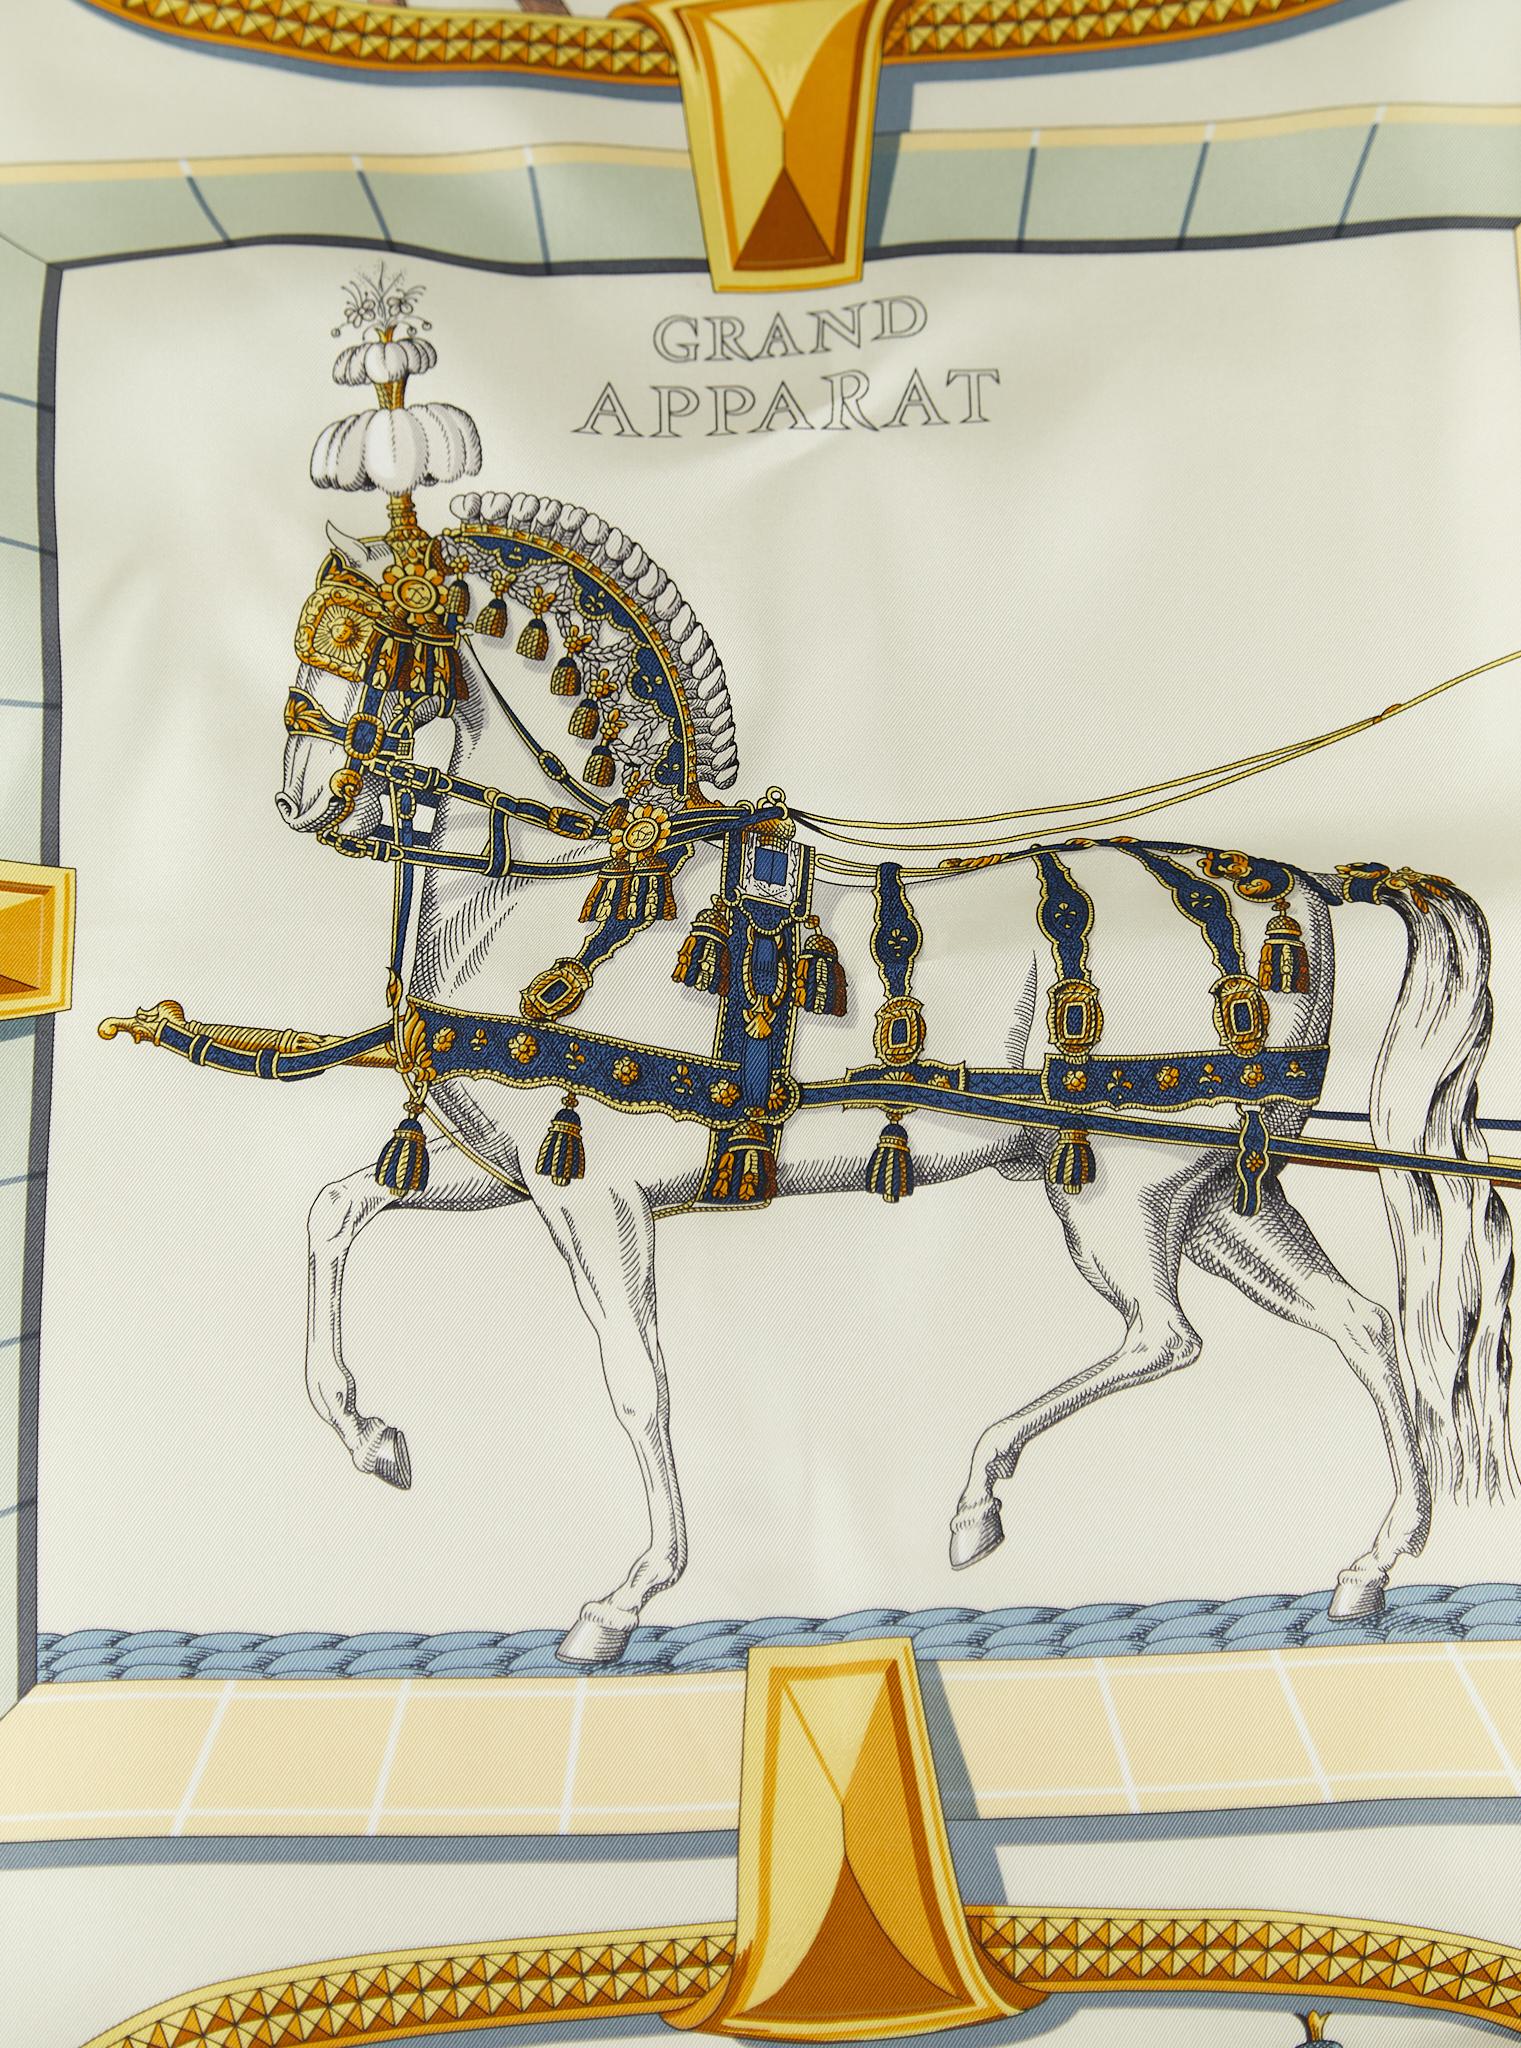 Foulard Grand Apparat Forever d'Hermès en sergé de soie avec bords roulés à la main (100% soie)

Fabriqué en France

Dimensions : 90 x 90 cm 

*La boîte n'est pas fournie